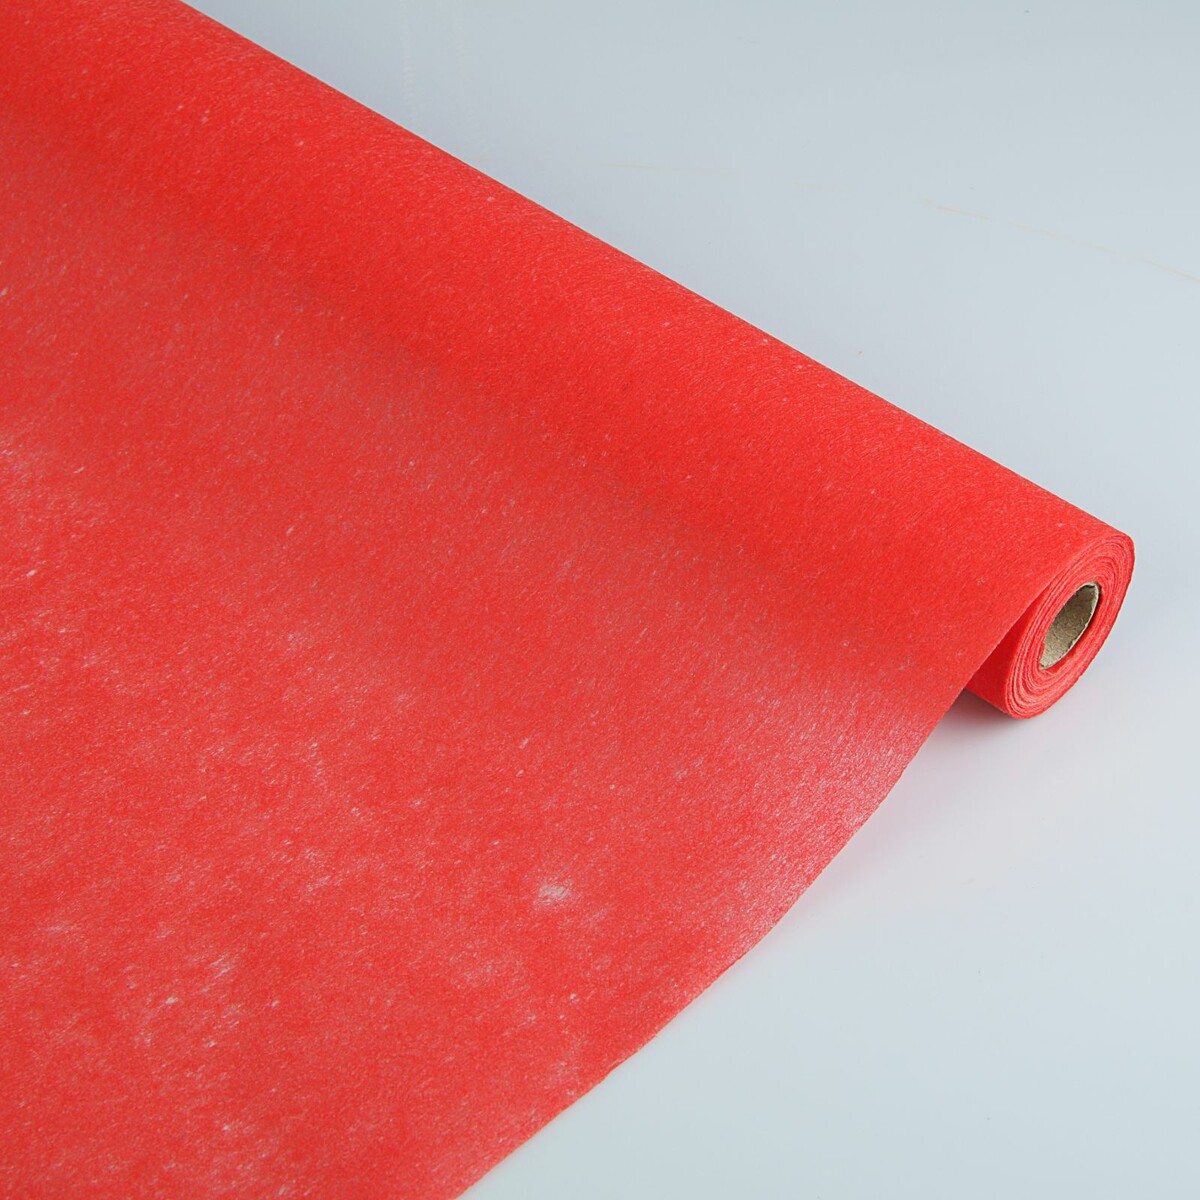 Фетр для упаковок и поделок, однотонный, красный, двусторонний, рулон 1шт., 50 см x 15 м фетр для упаковок и поделок однотонный красный двусторонний рулон 1шт 50 см x 15 м